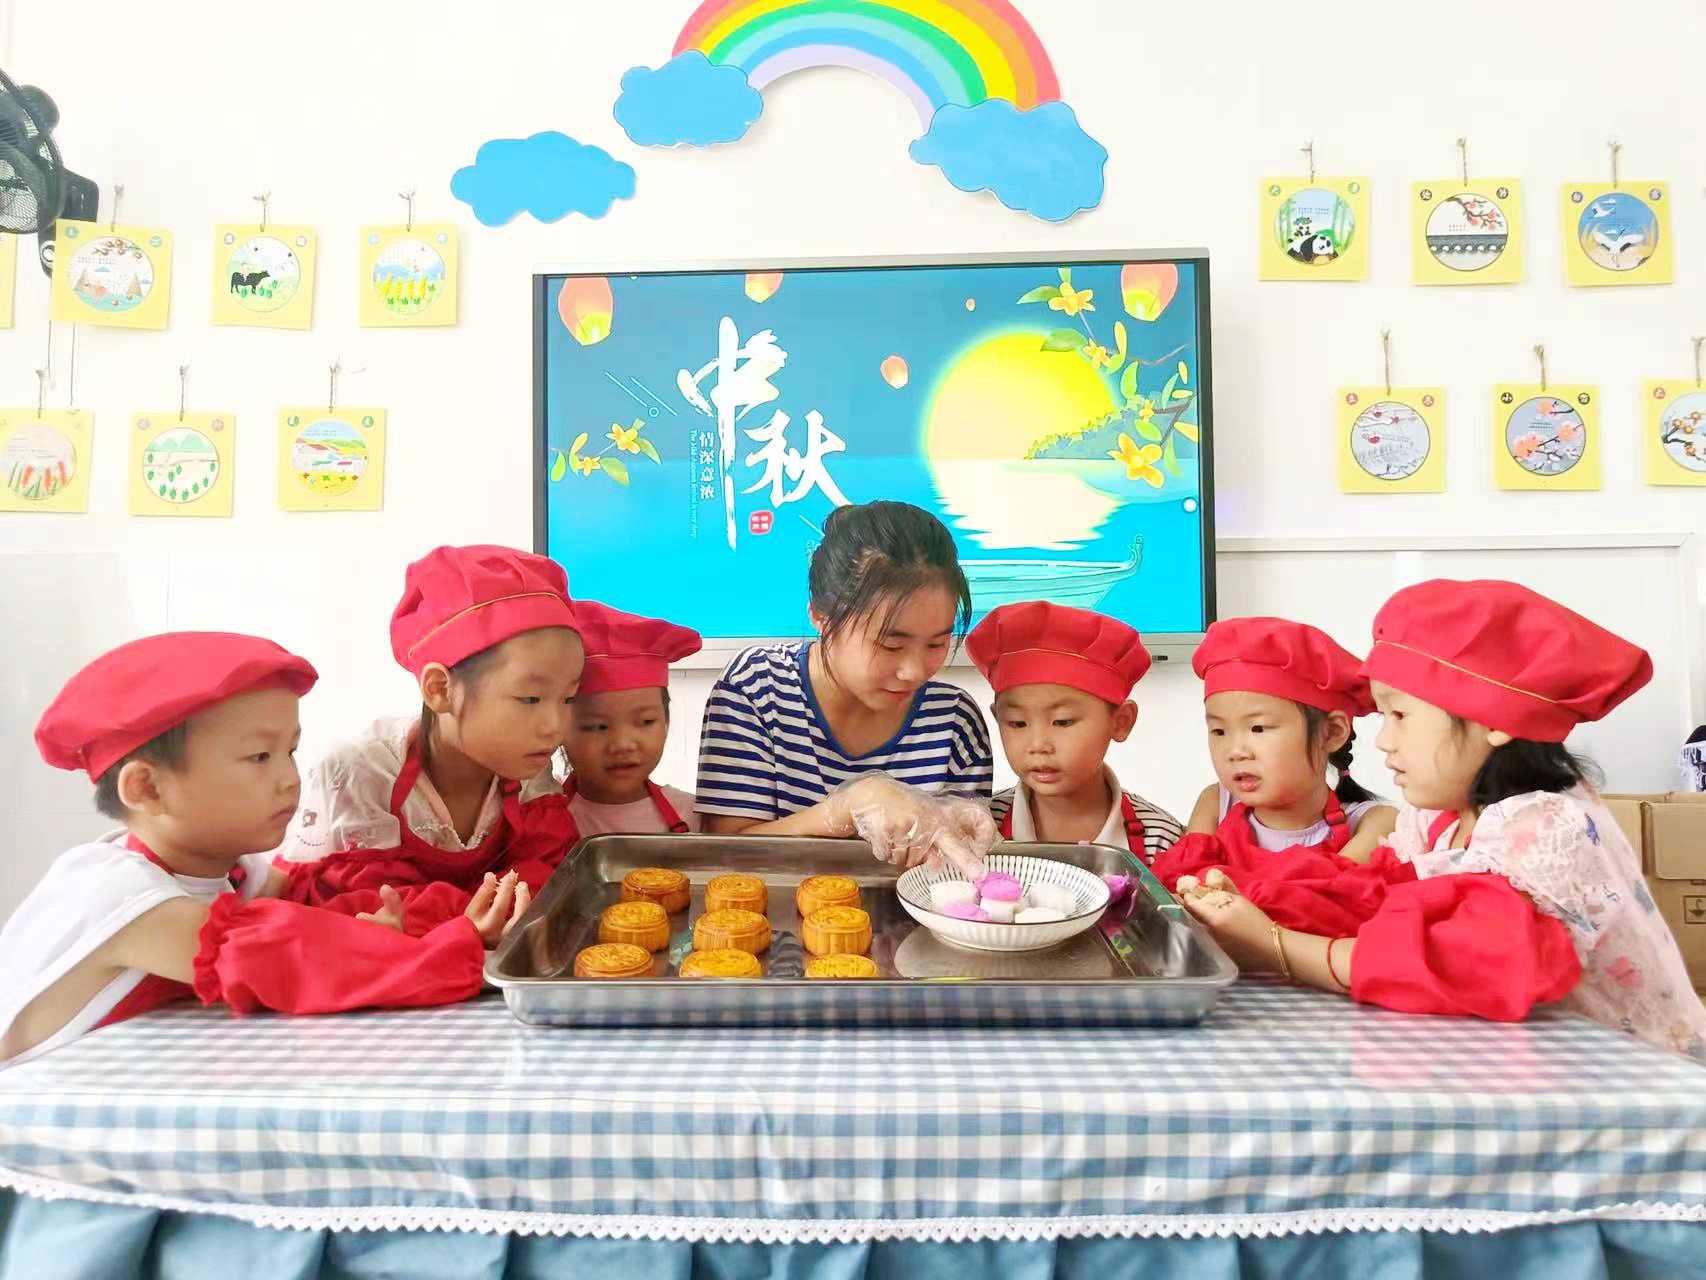 五彩缤纷的月饼 - 多彩的一天 - 杭州市德胜幼儿园